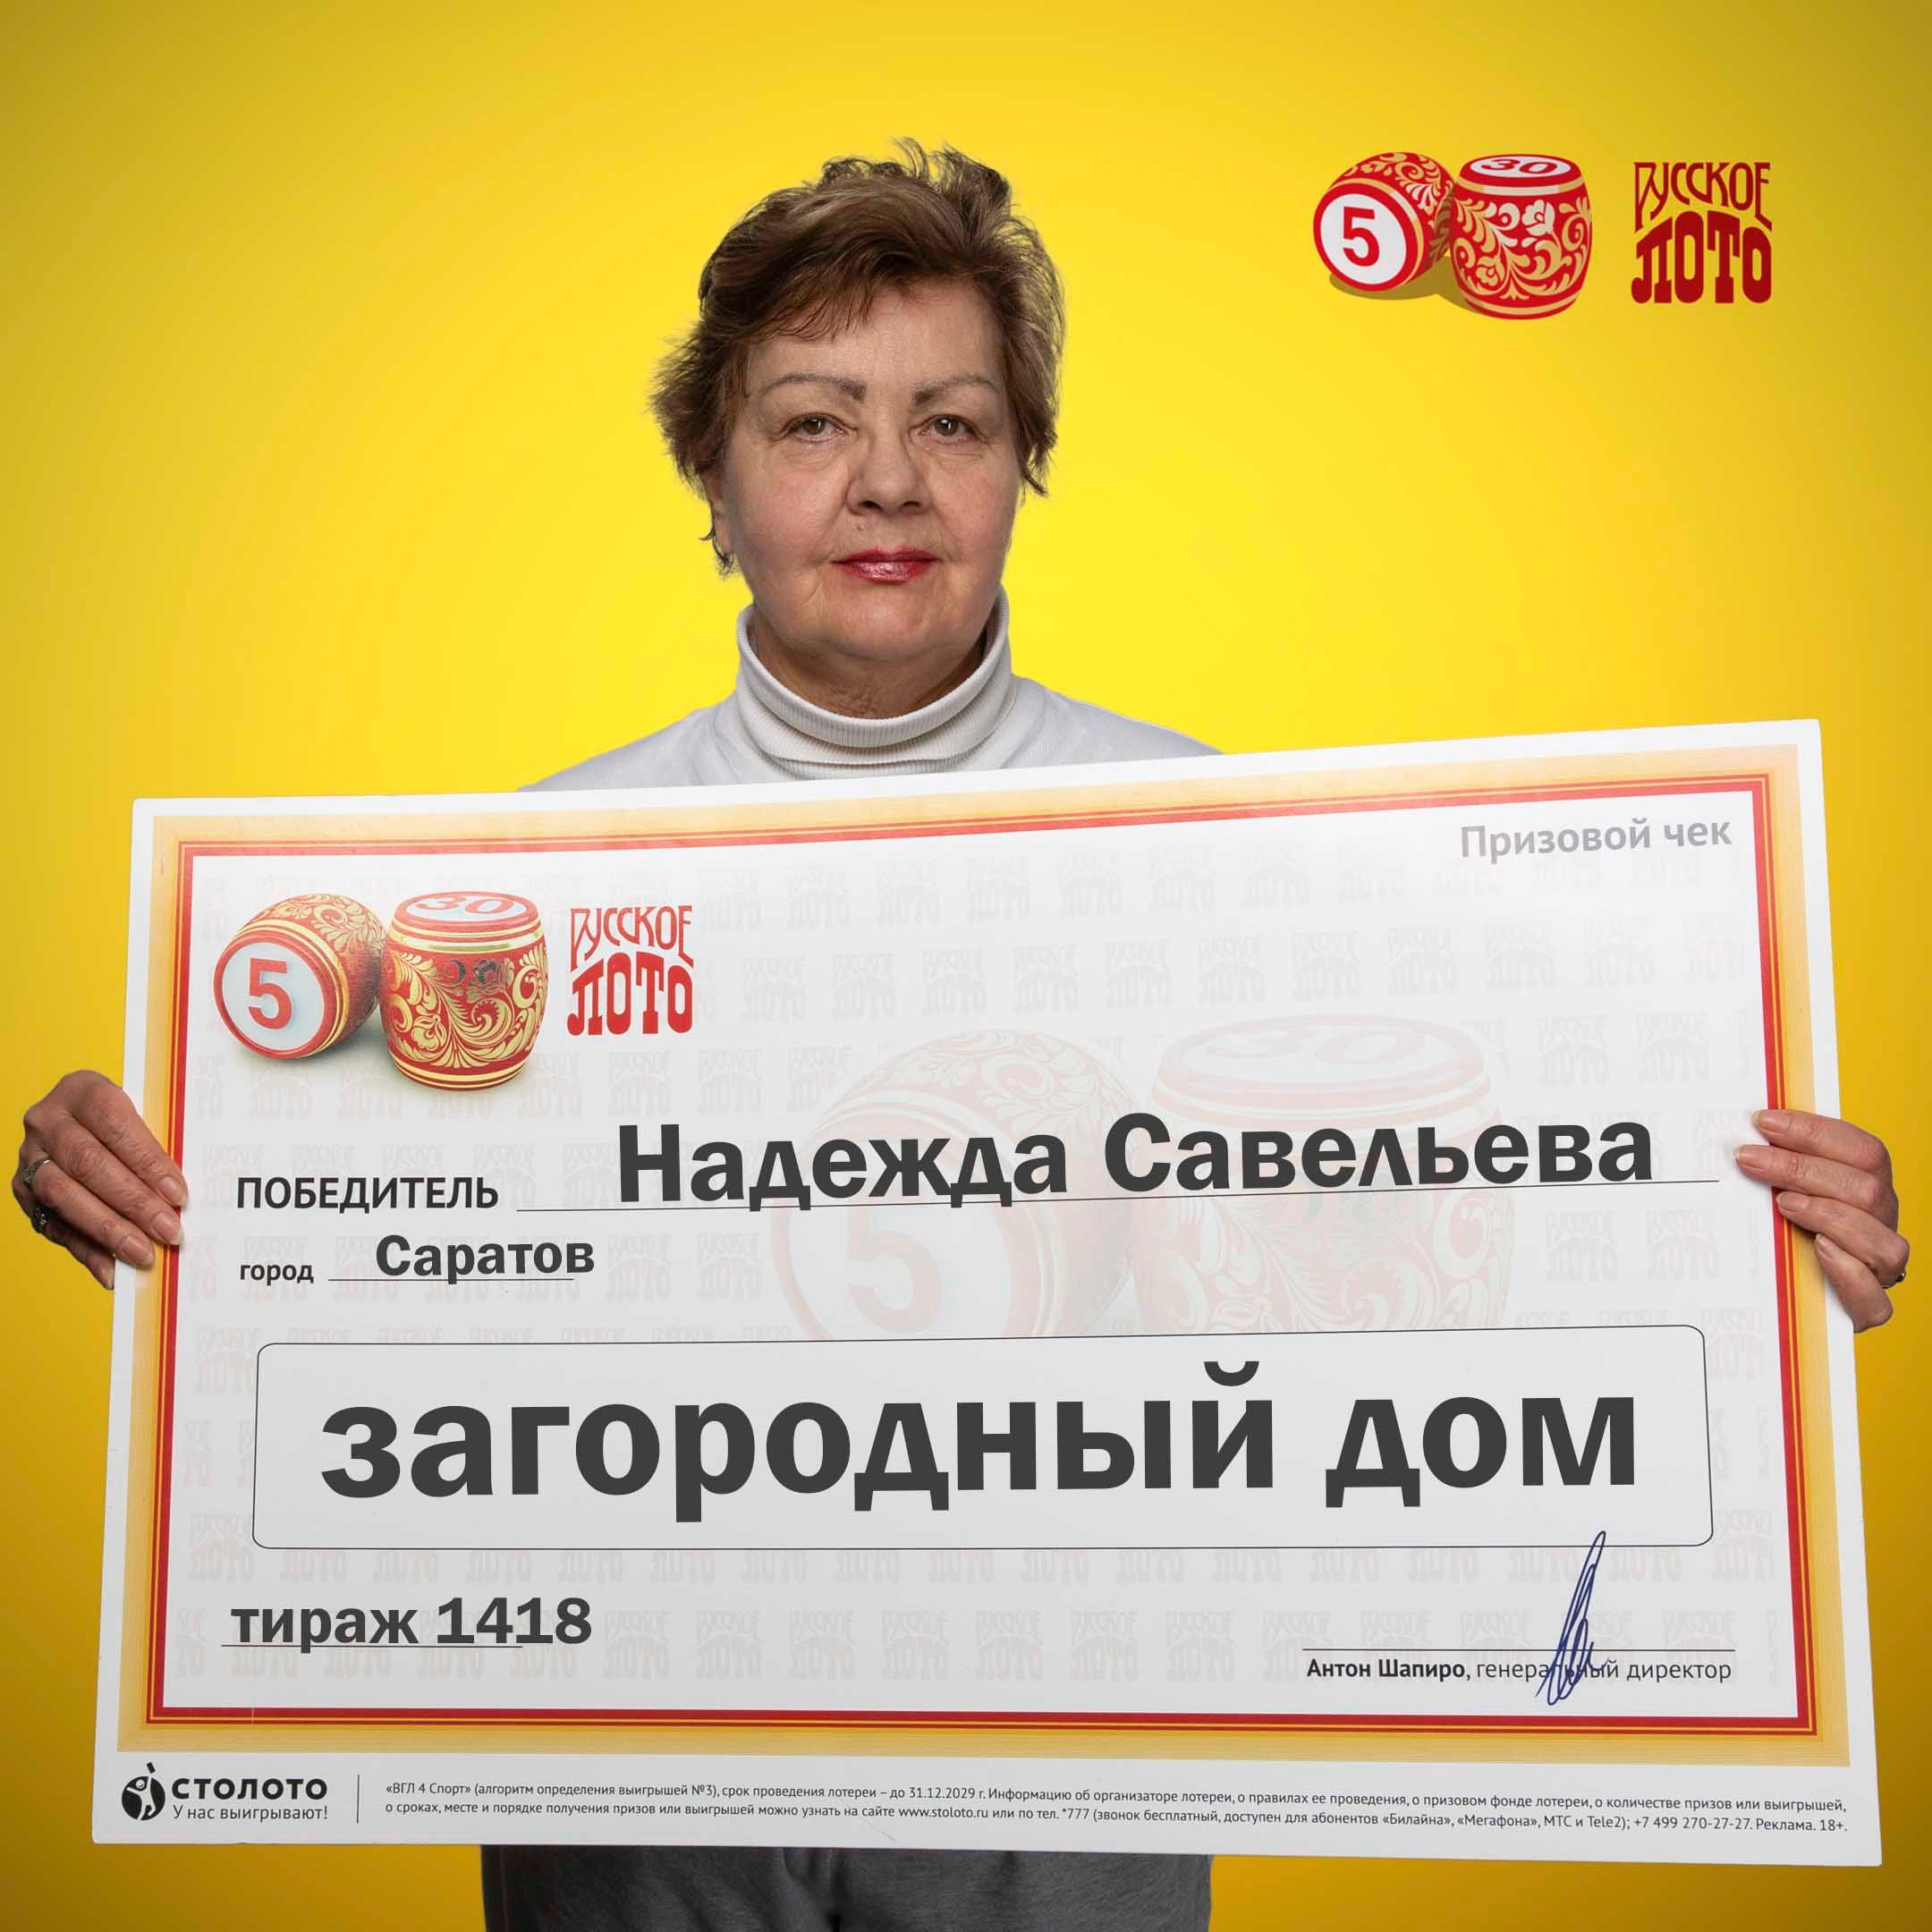 Надежда Савельева, победитель «Русского лото»